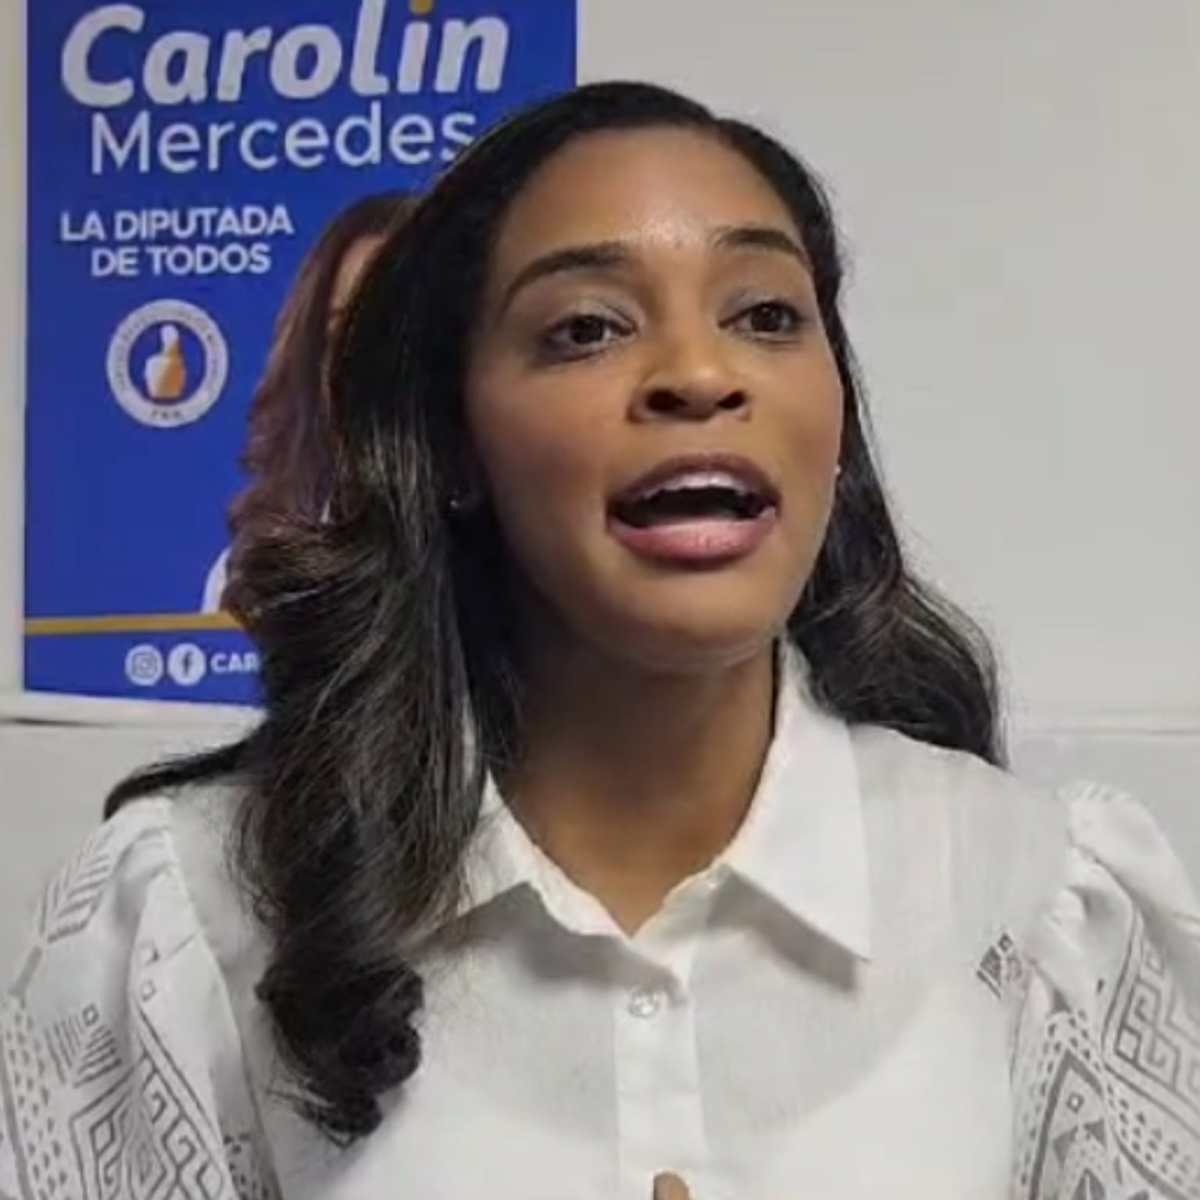 Candidata a diputada por La Vega afirma mujeres tienen seguir avanzando en la sociedad –  (República Dominicana)